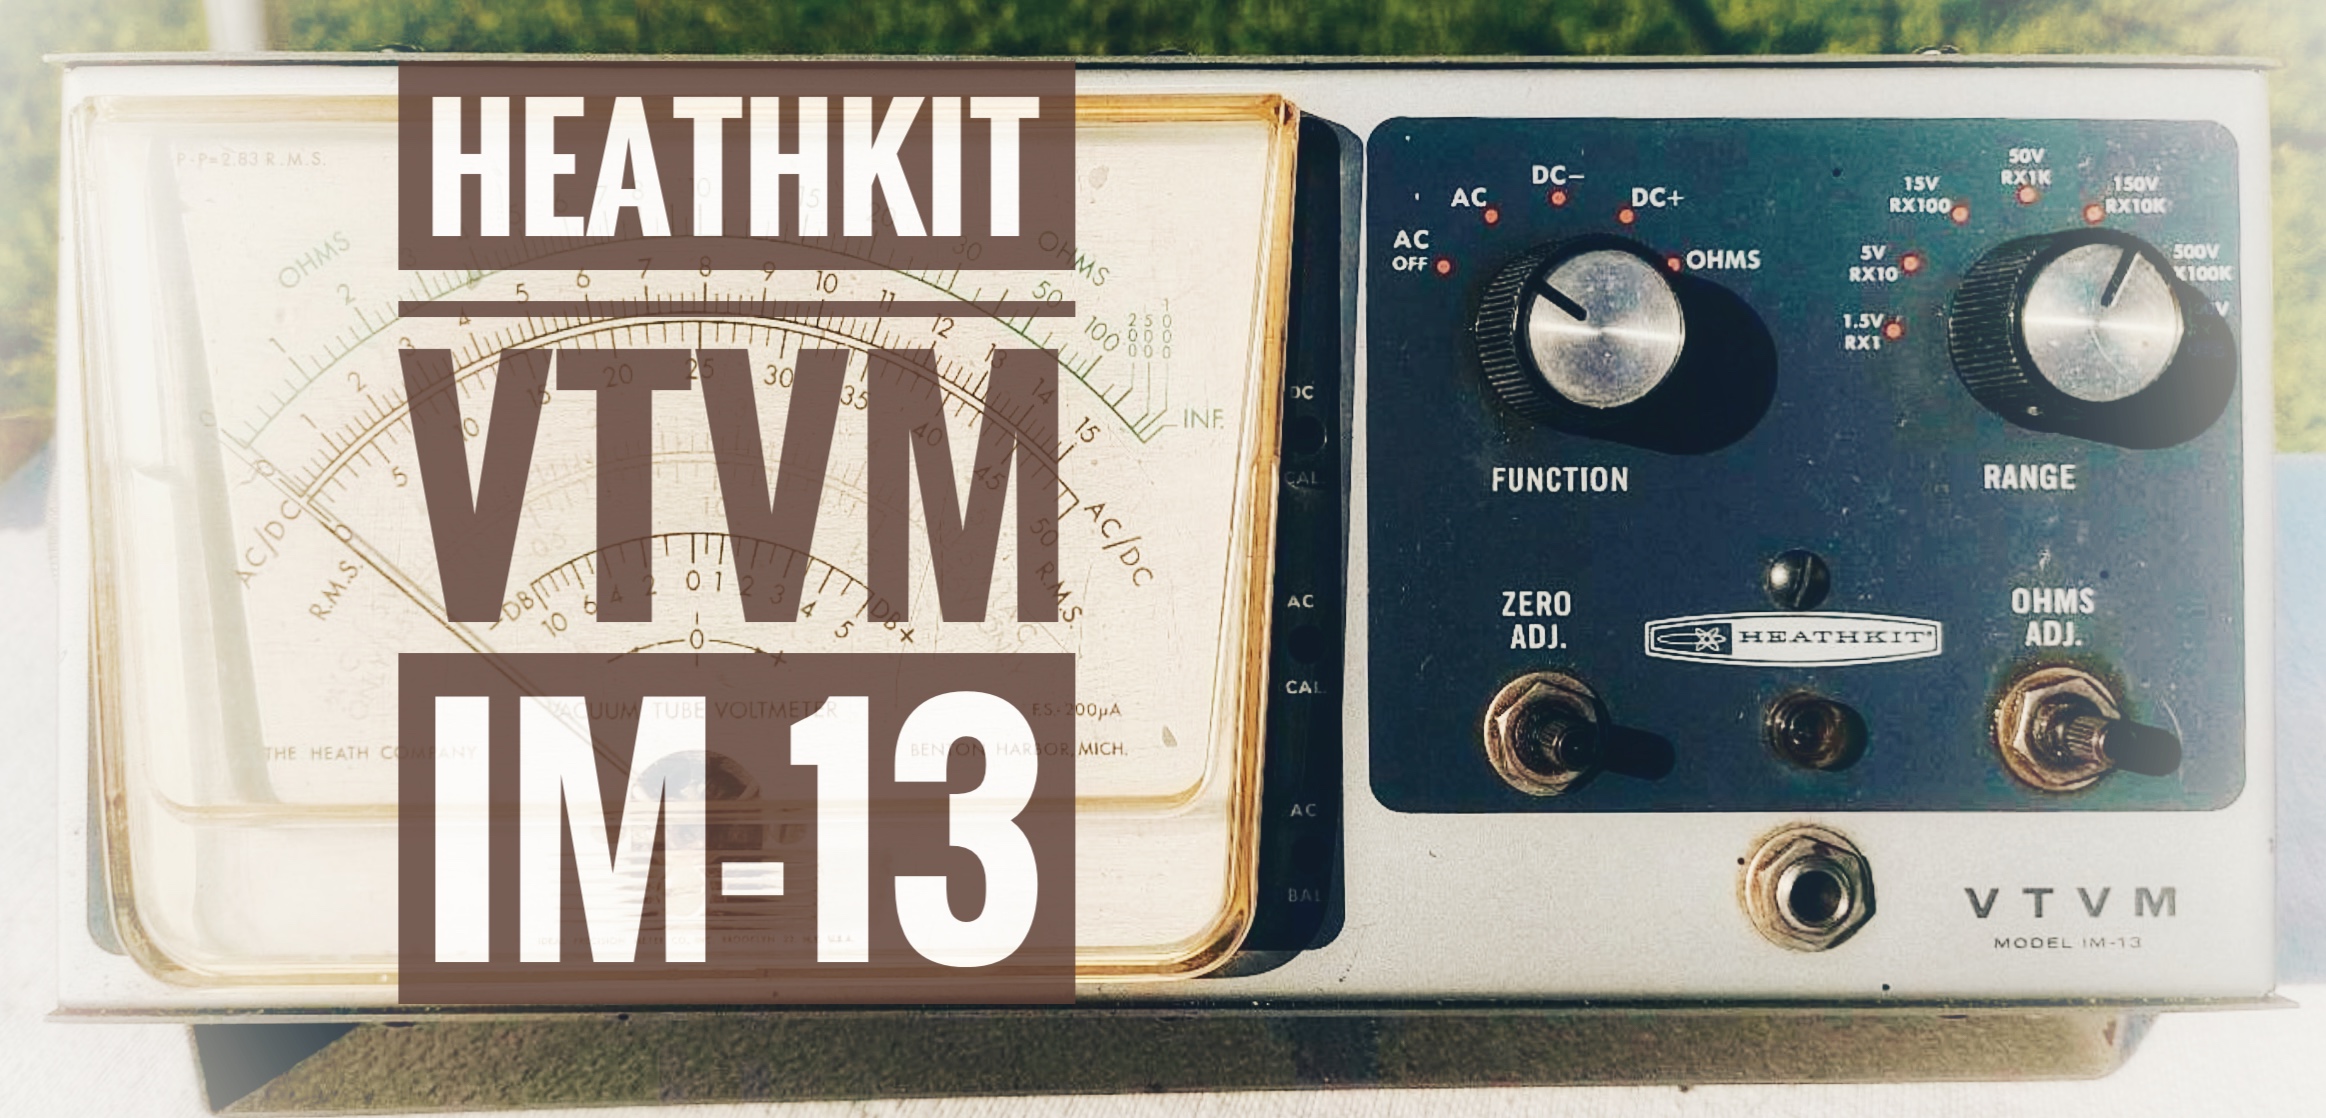 Heathkit VTVM IM-13